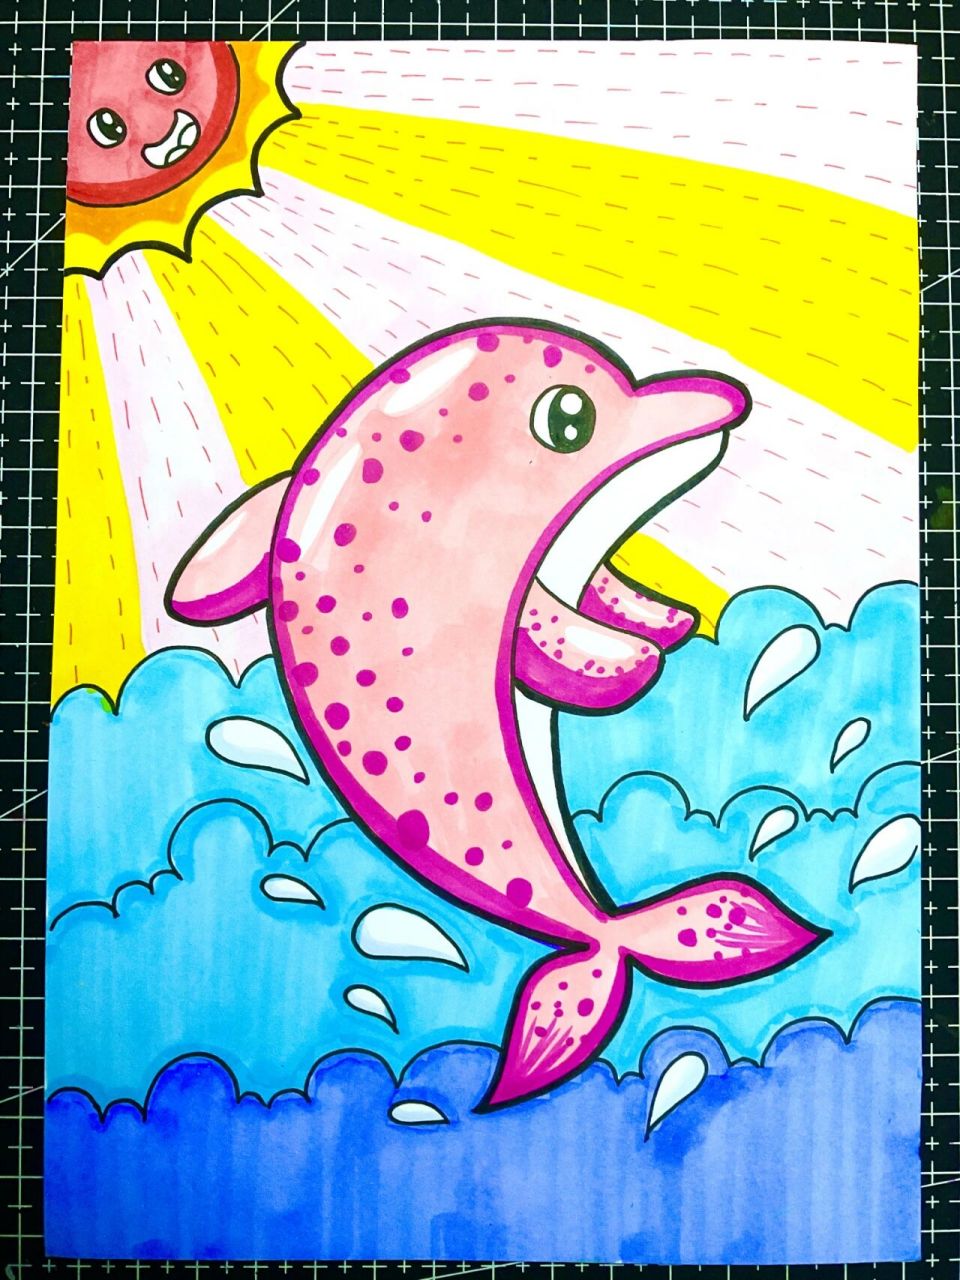 海豚简笔画彩色 可爱图片